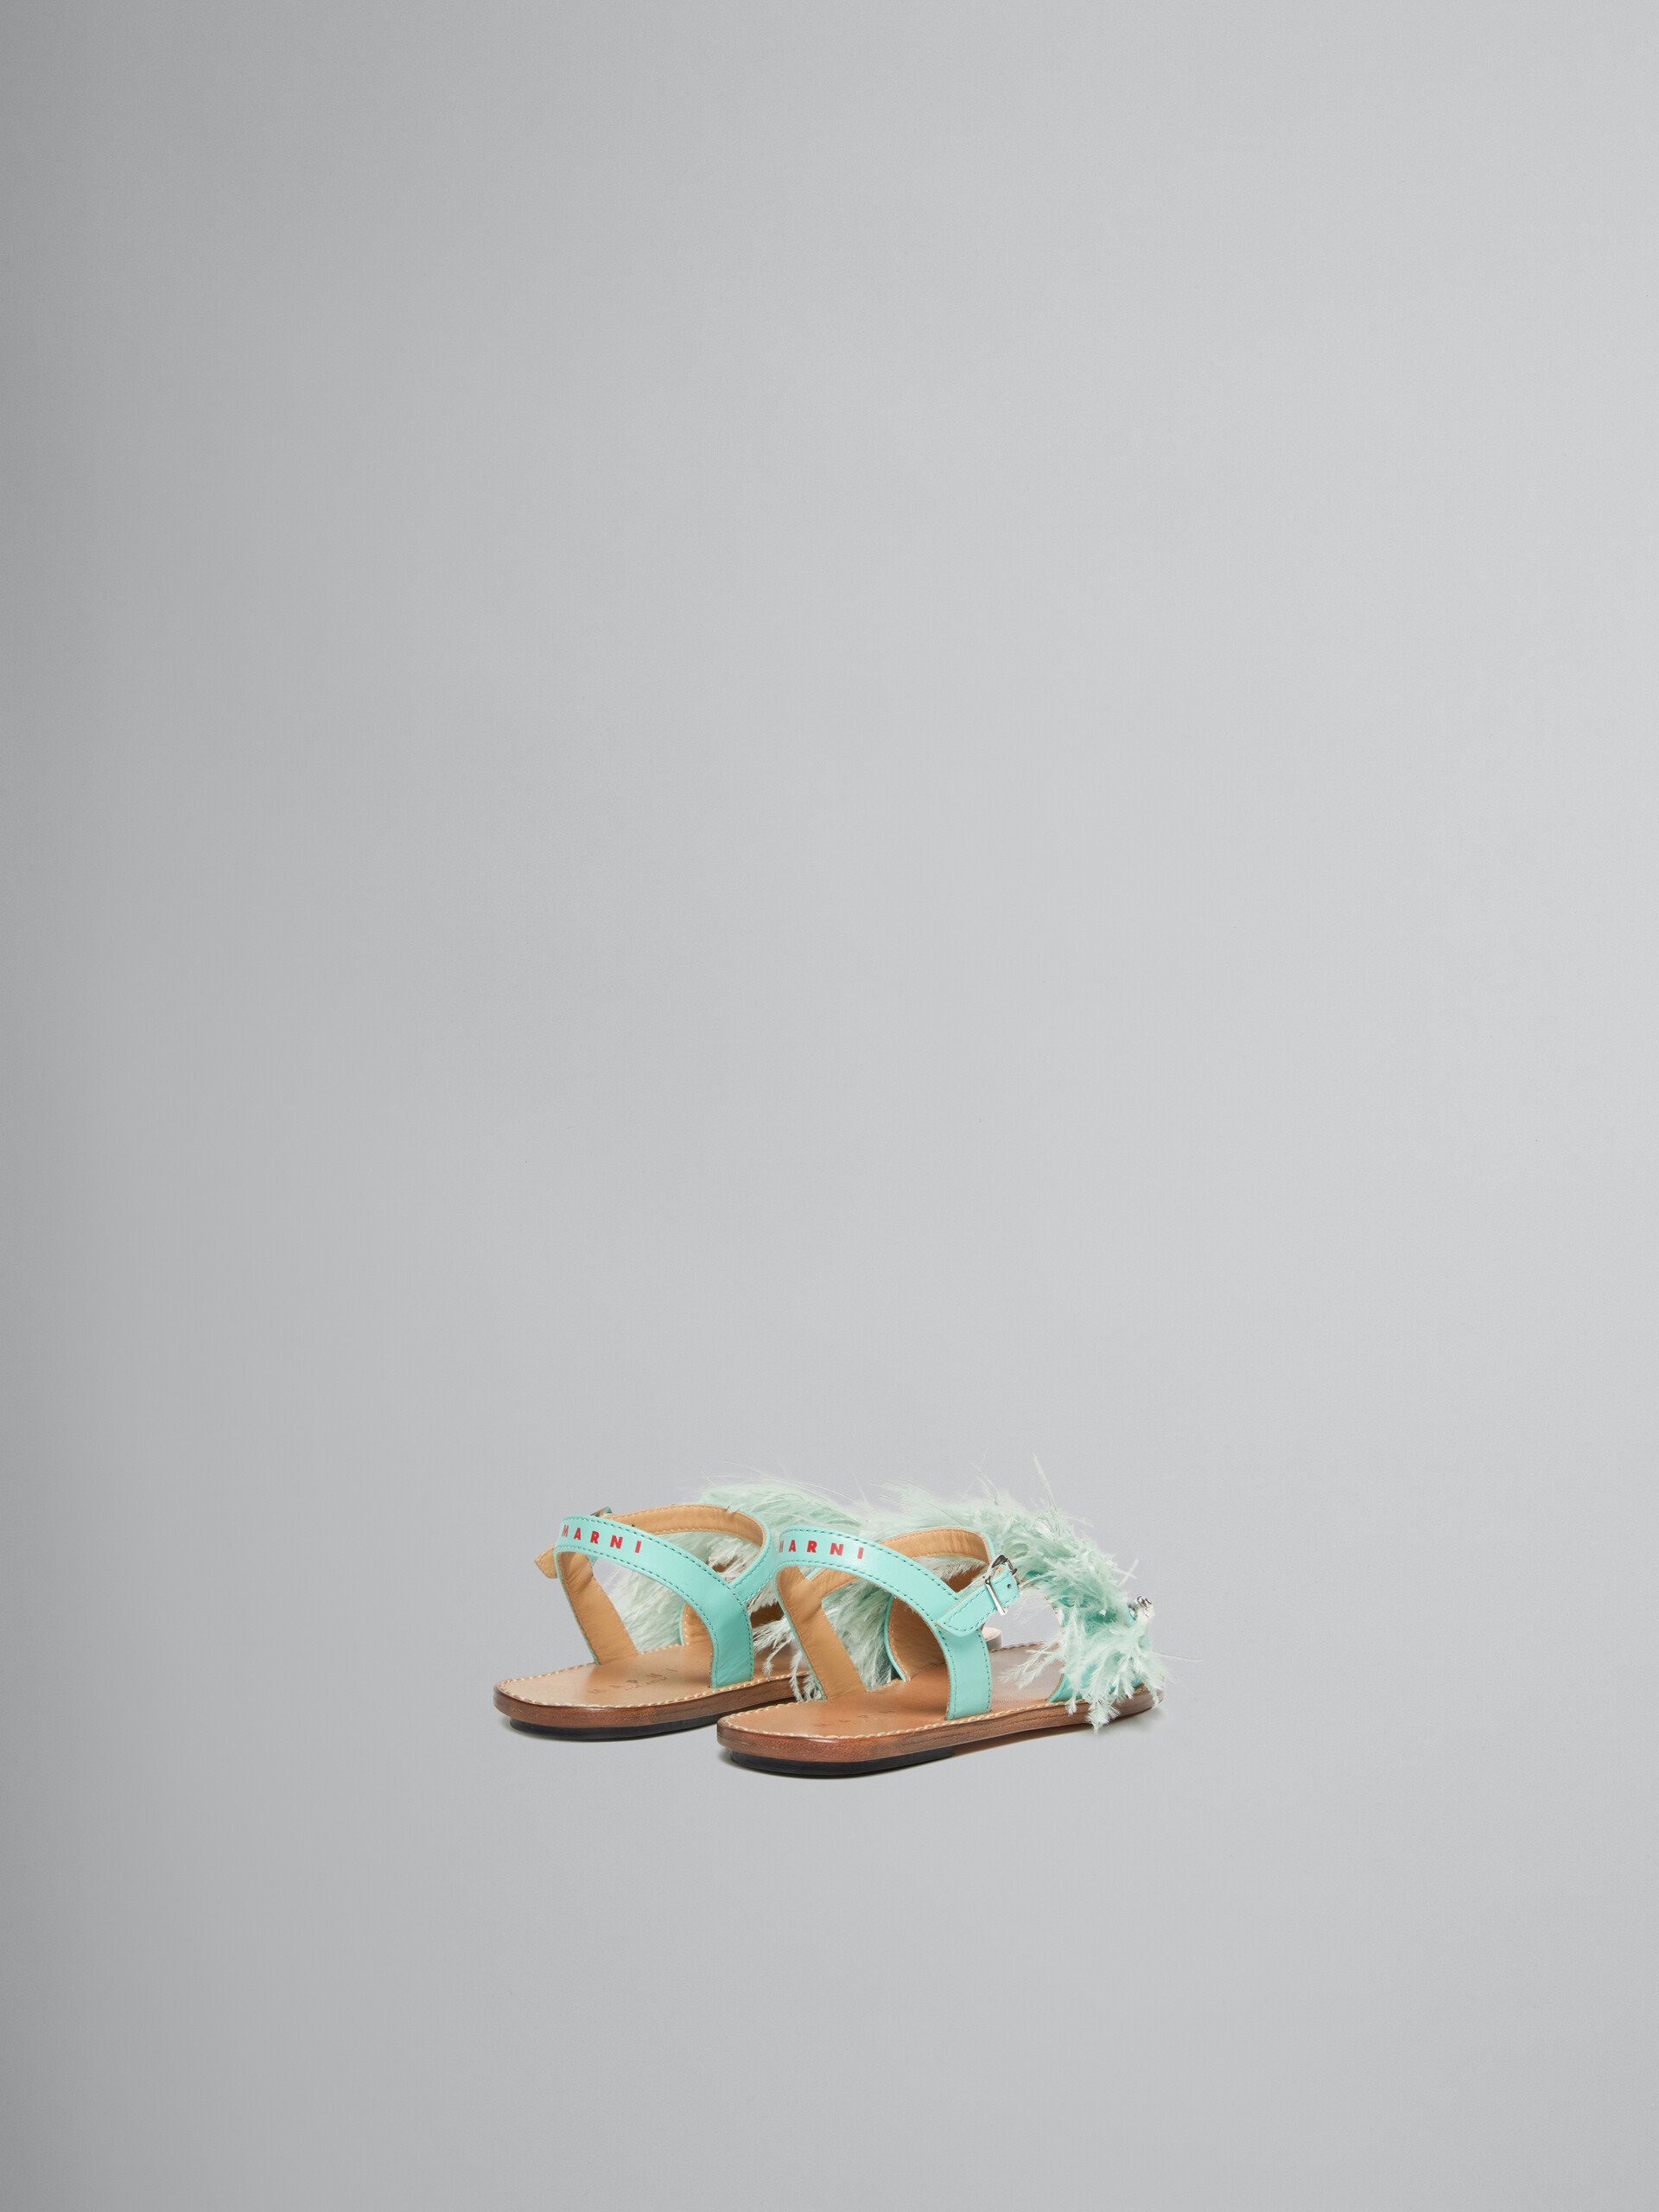 Sandales Marabou à plume turquoise - ENFANT - Image 3